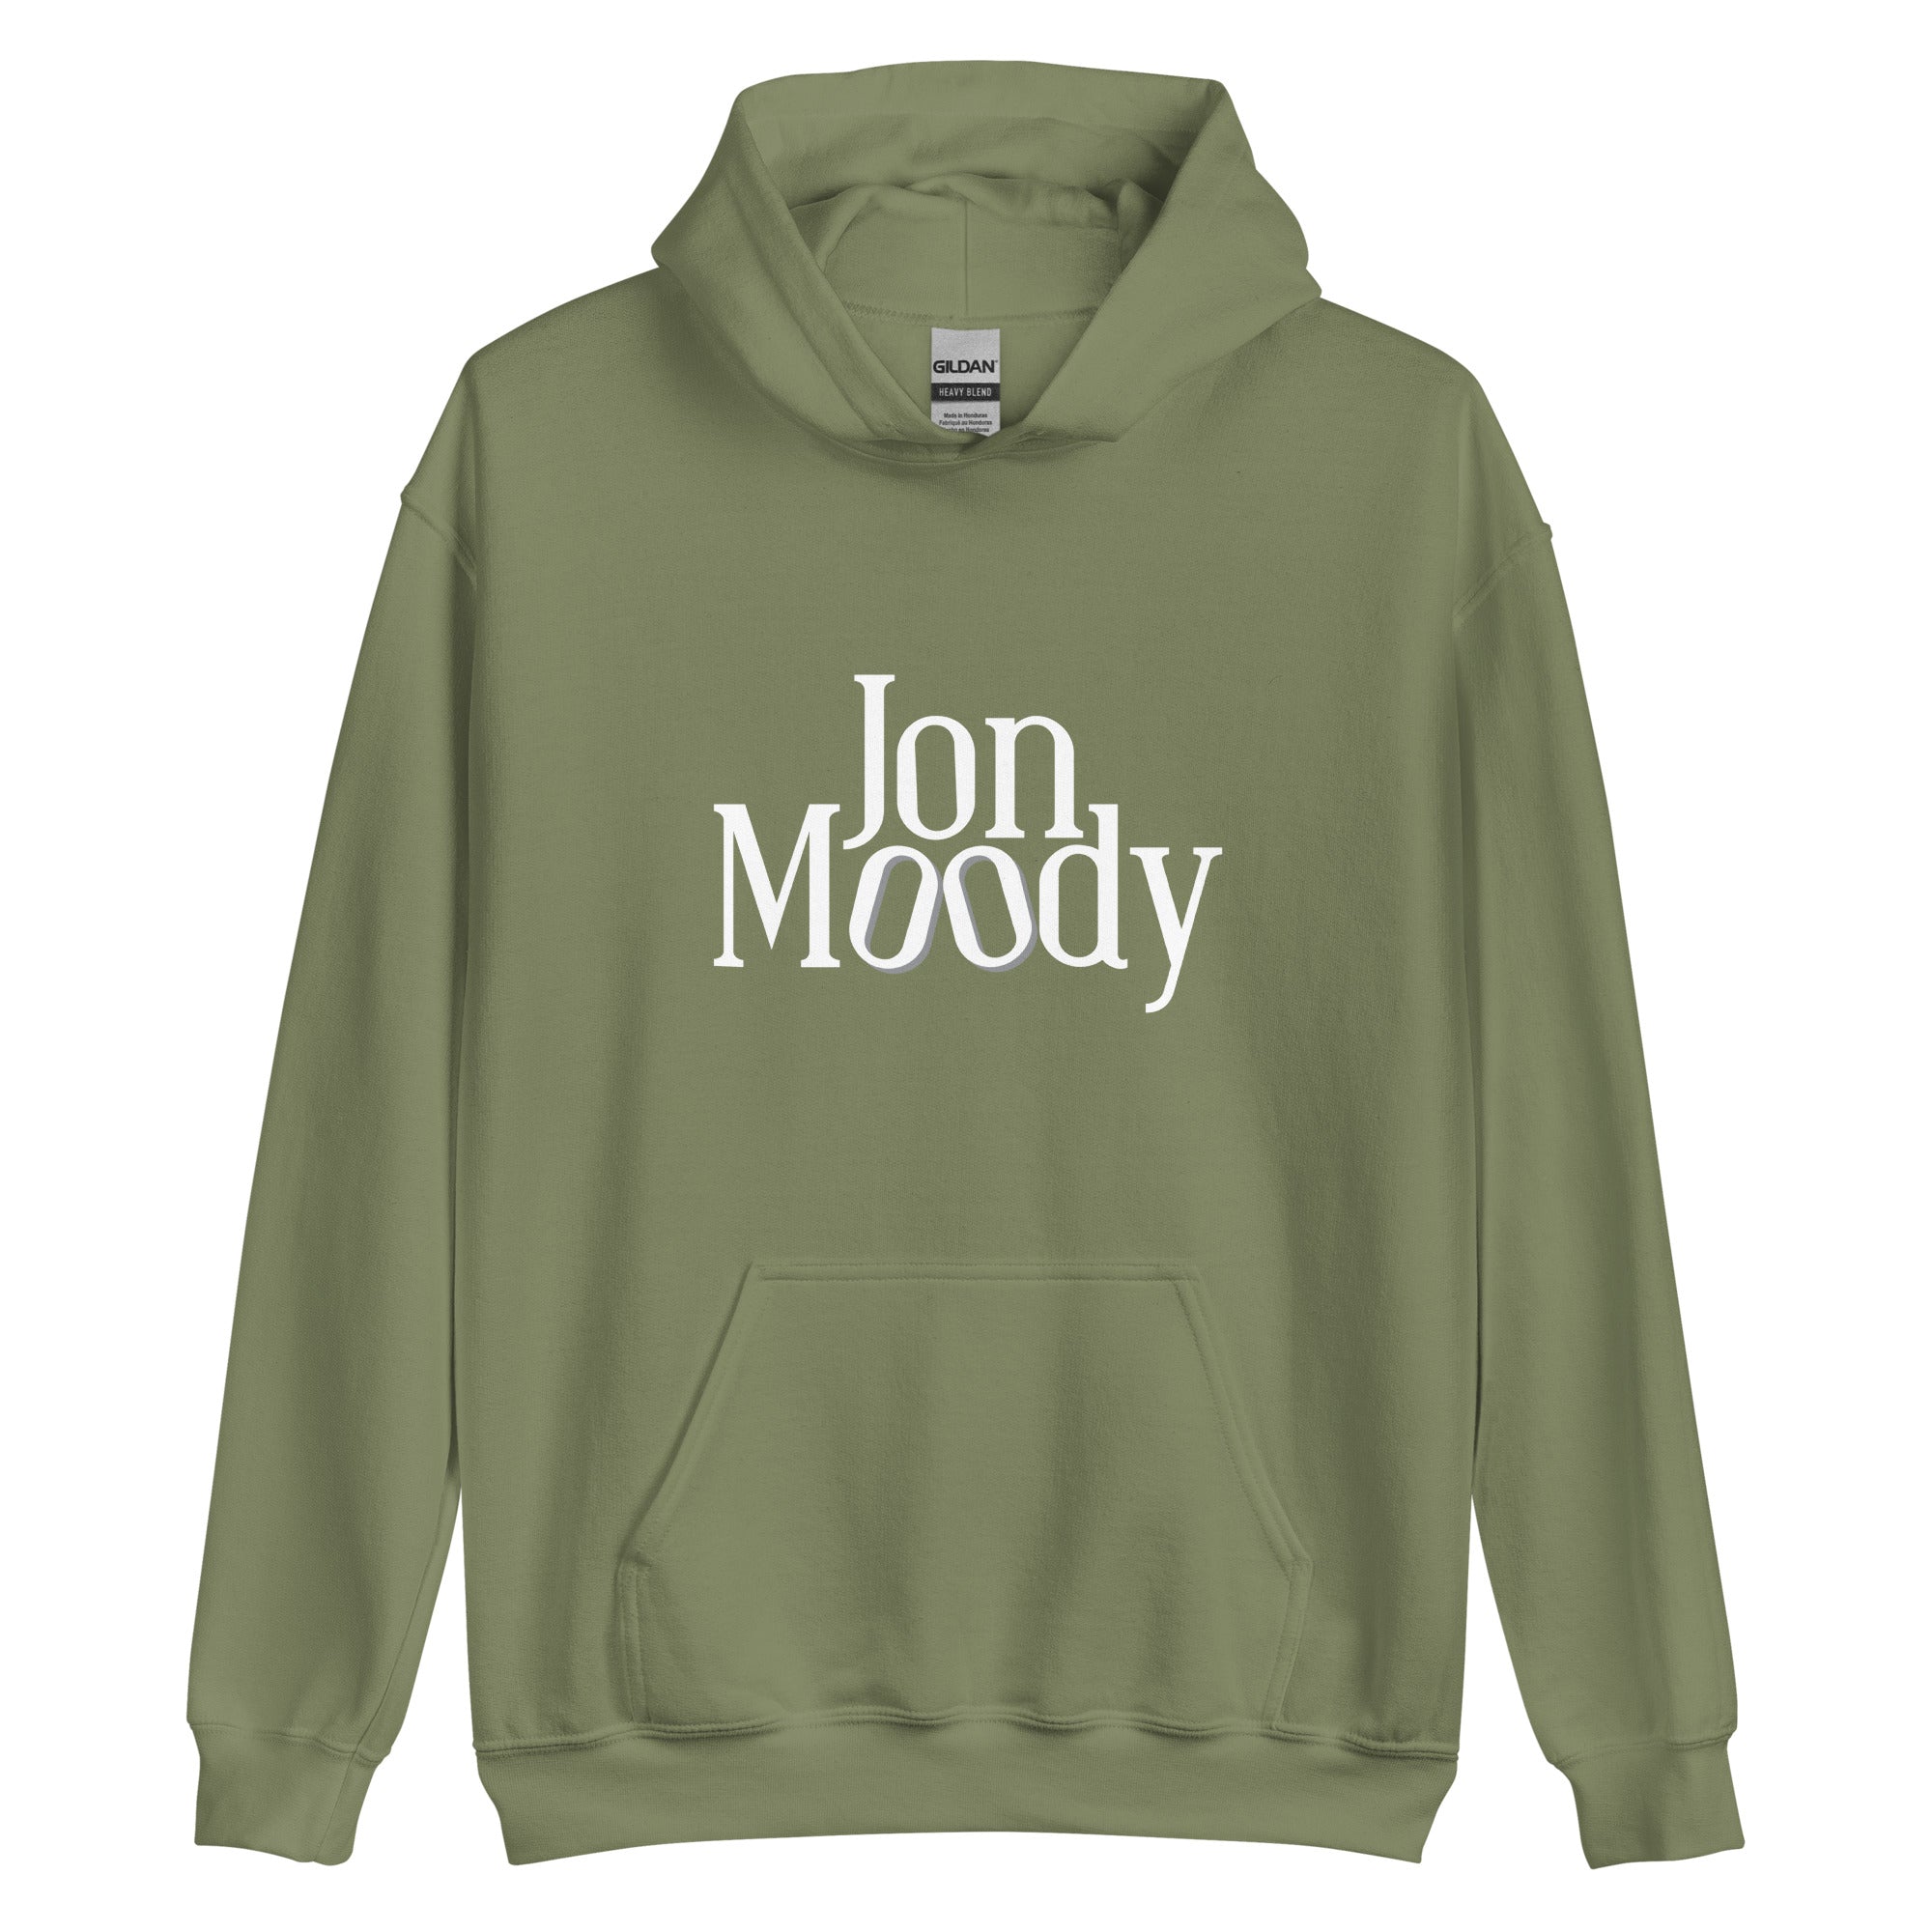 Jon Moody - Unisex Hoodie